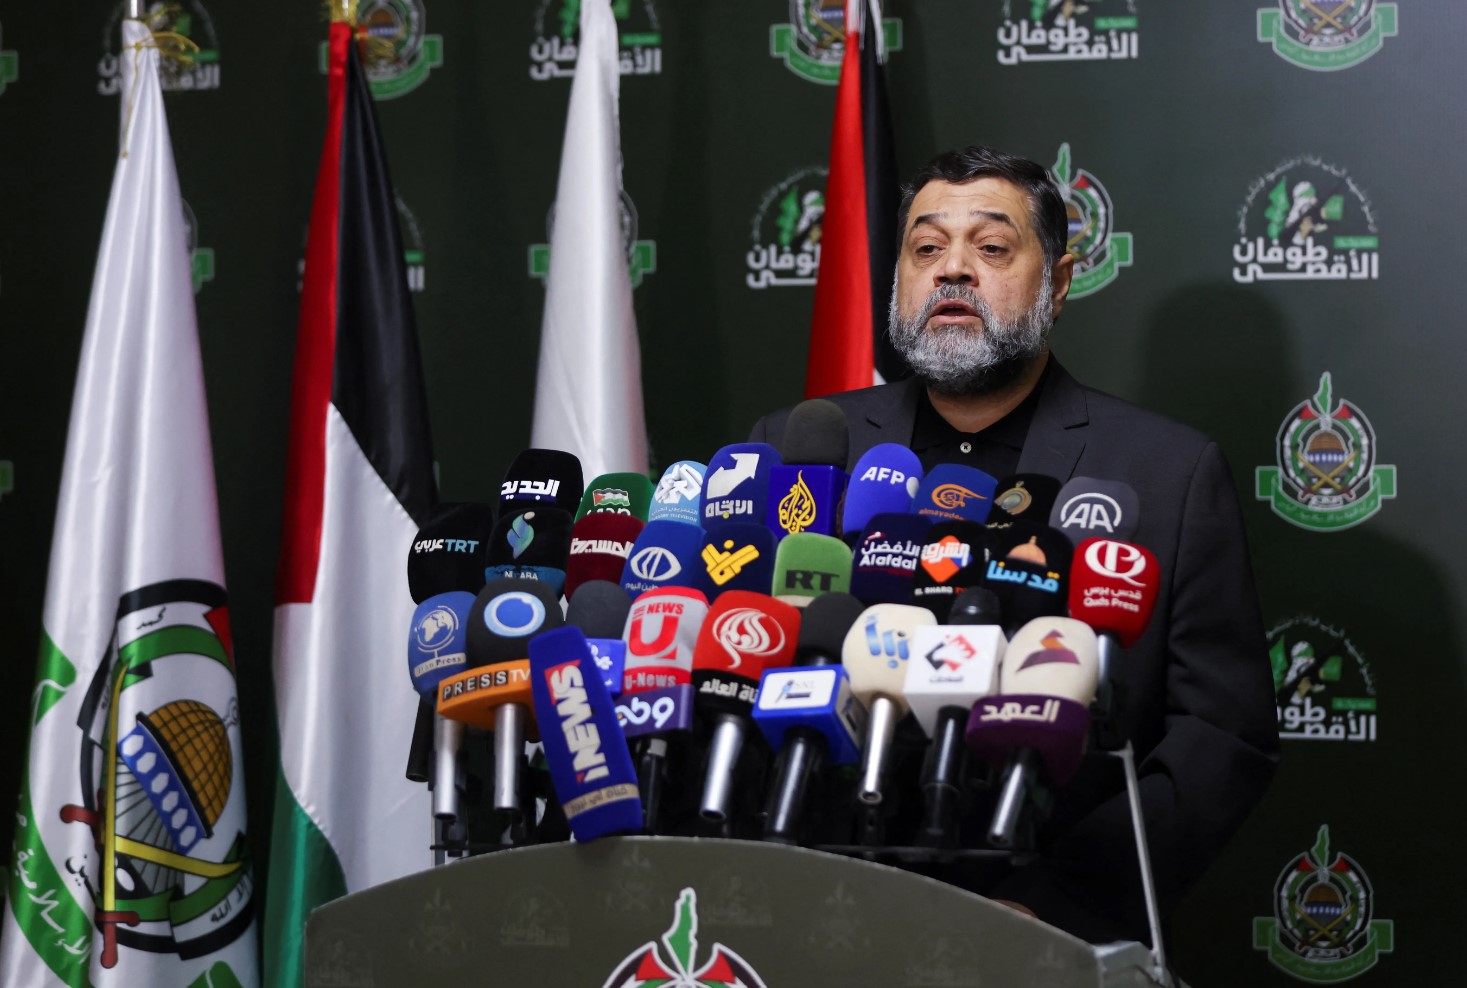 حمدان: حماس تنظر بإيجابية لتصريحات بايدن ونتنياهو من يعرقل كل الجهود